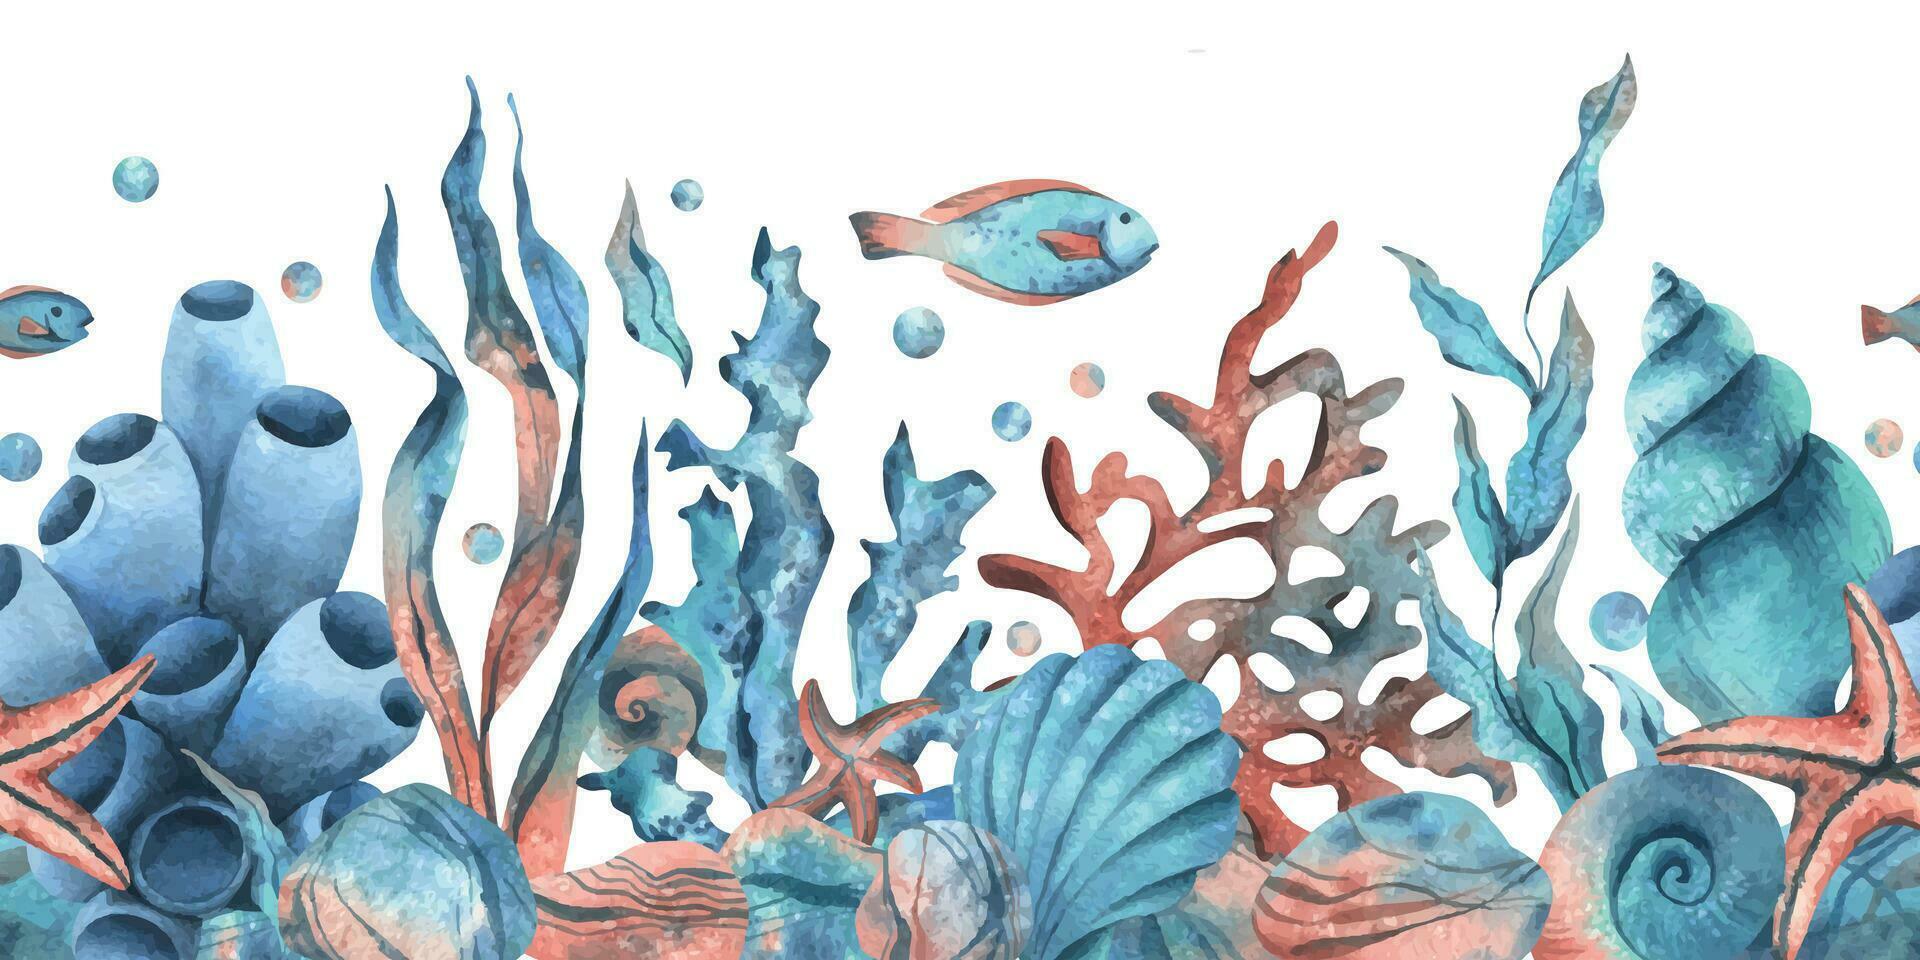 under vattnet värld ClipArt med hav djur val, sköldpadda, bläckfisk, sjöhäst, sjöstjärna, skal, korall och alger. hand dragen vattenfärg illustration. sömlös gräns isolerat från de bakgrund vektor